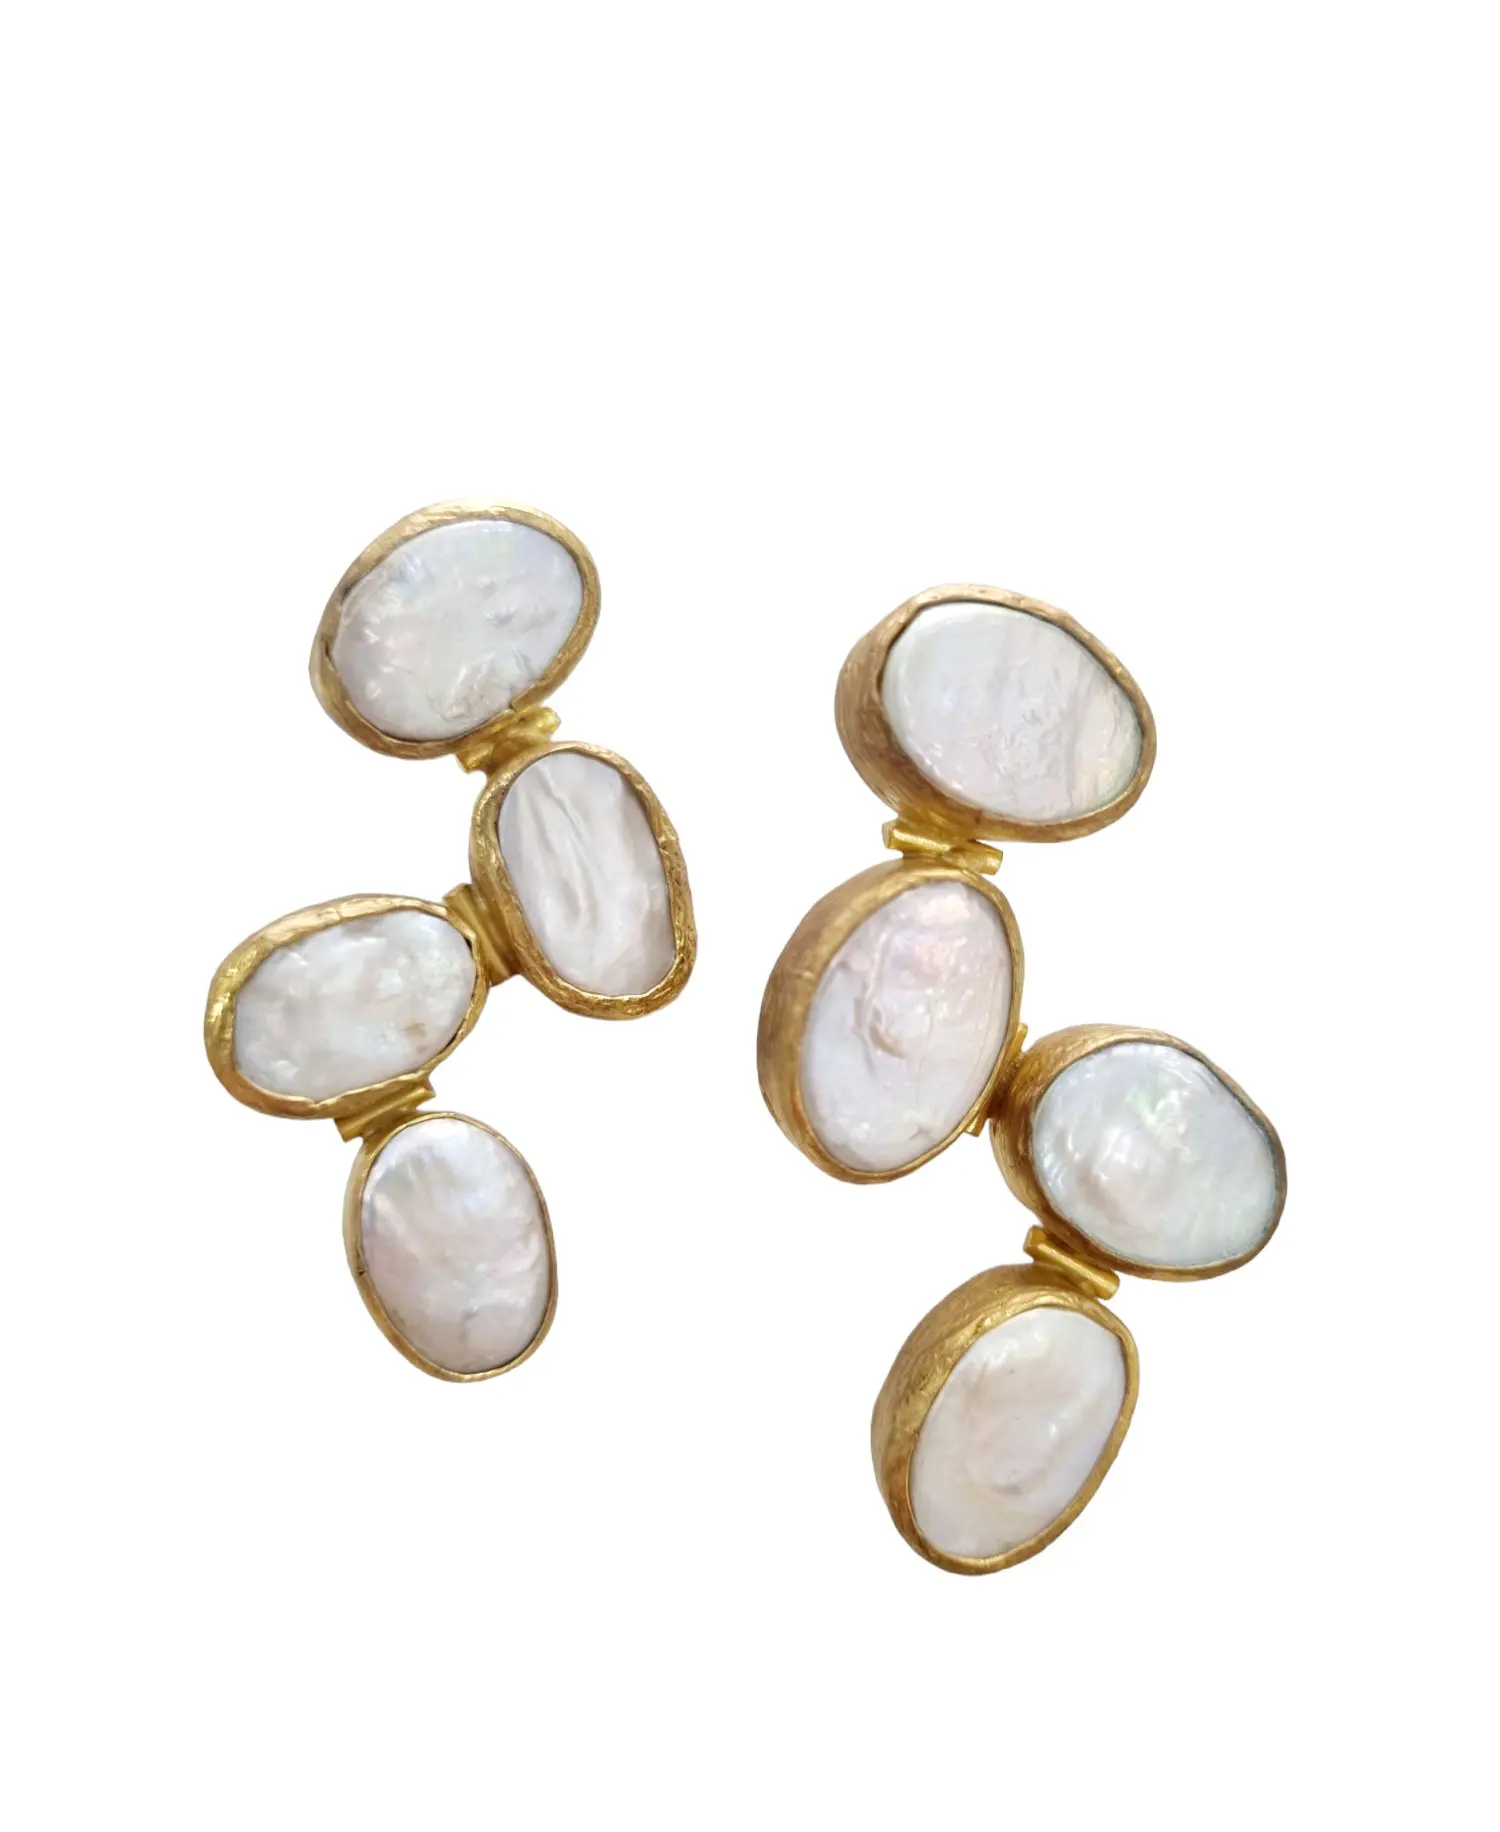 Ohrringe aus in Messing gefassten Perlen. Gewicht 14,2 g, Länge 4,5 cm